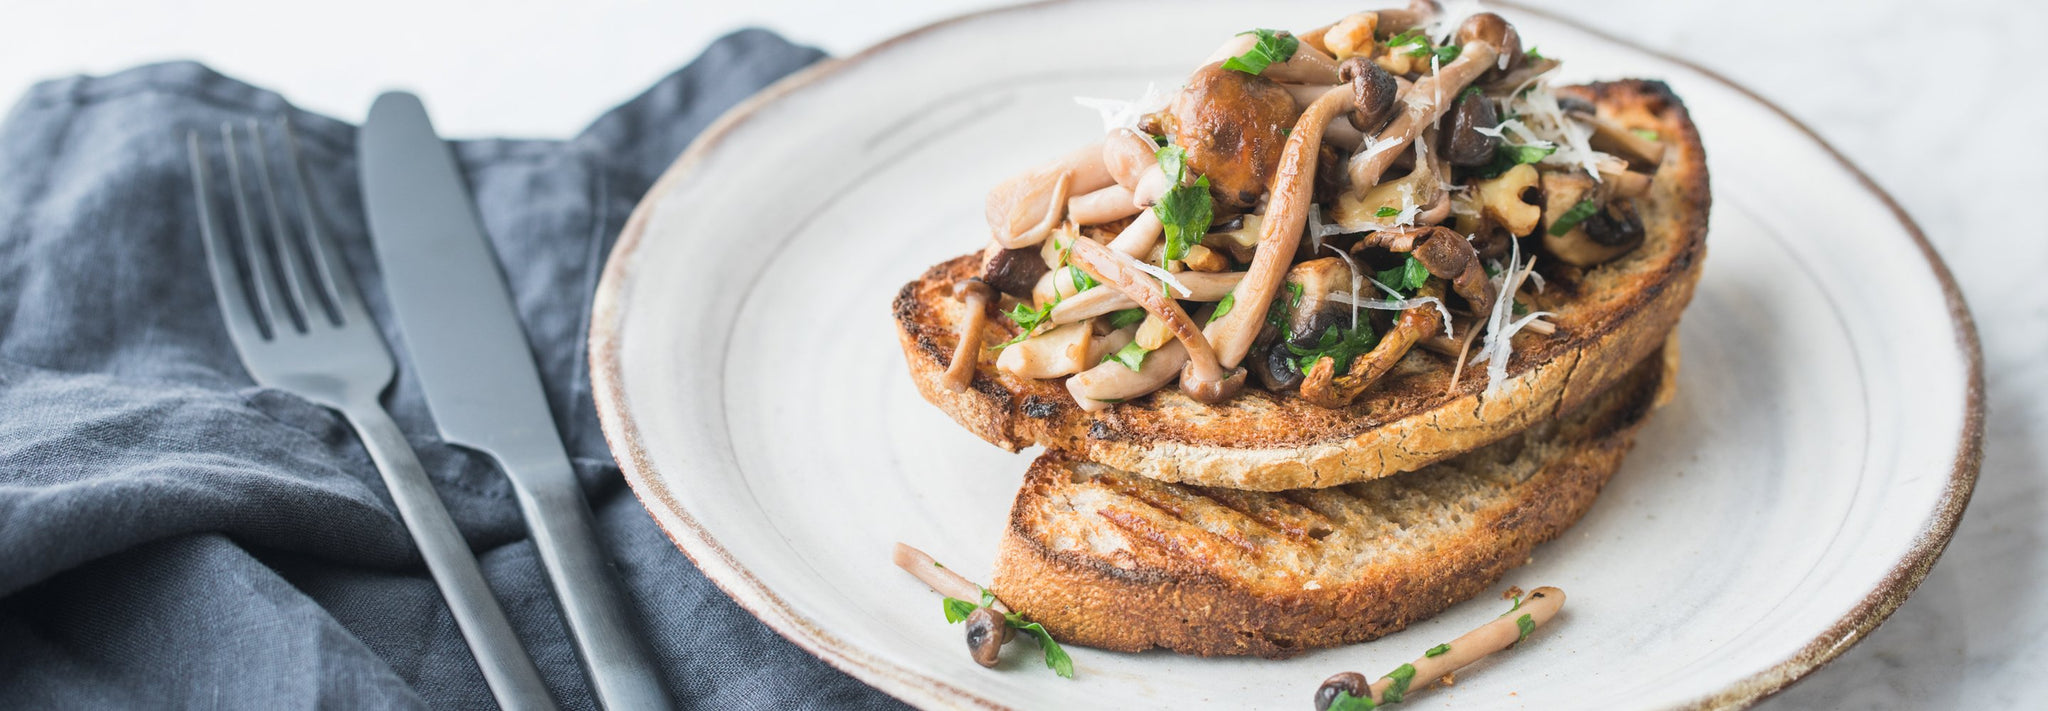 Wild Mushrooms and Walnuts on Toast